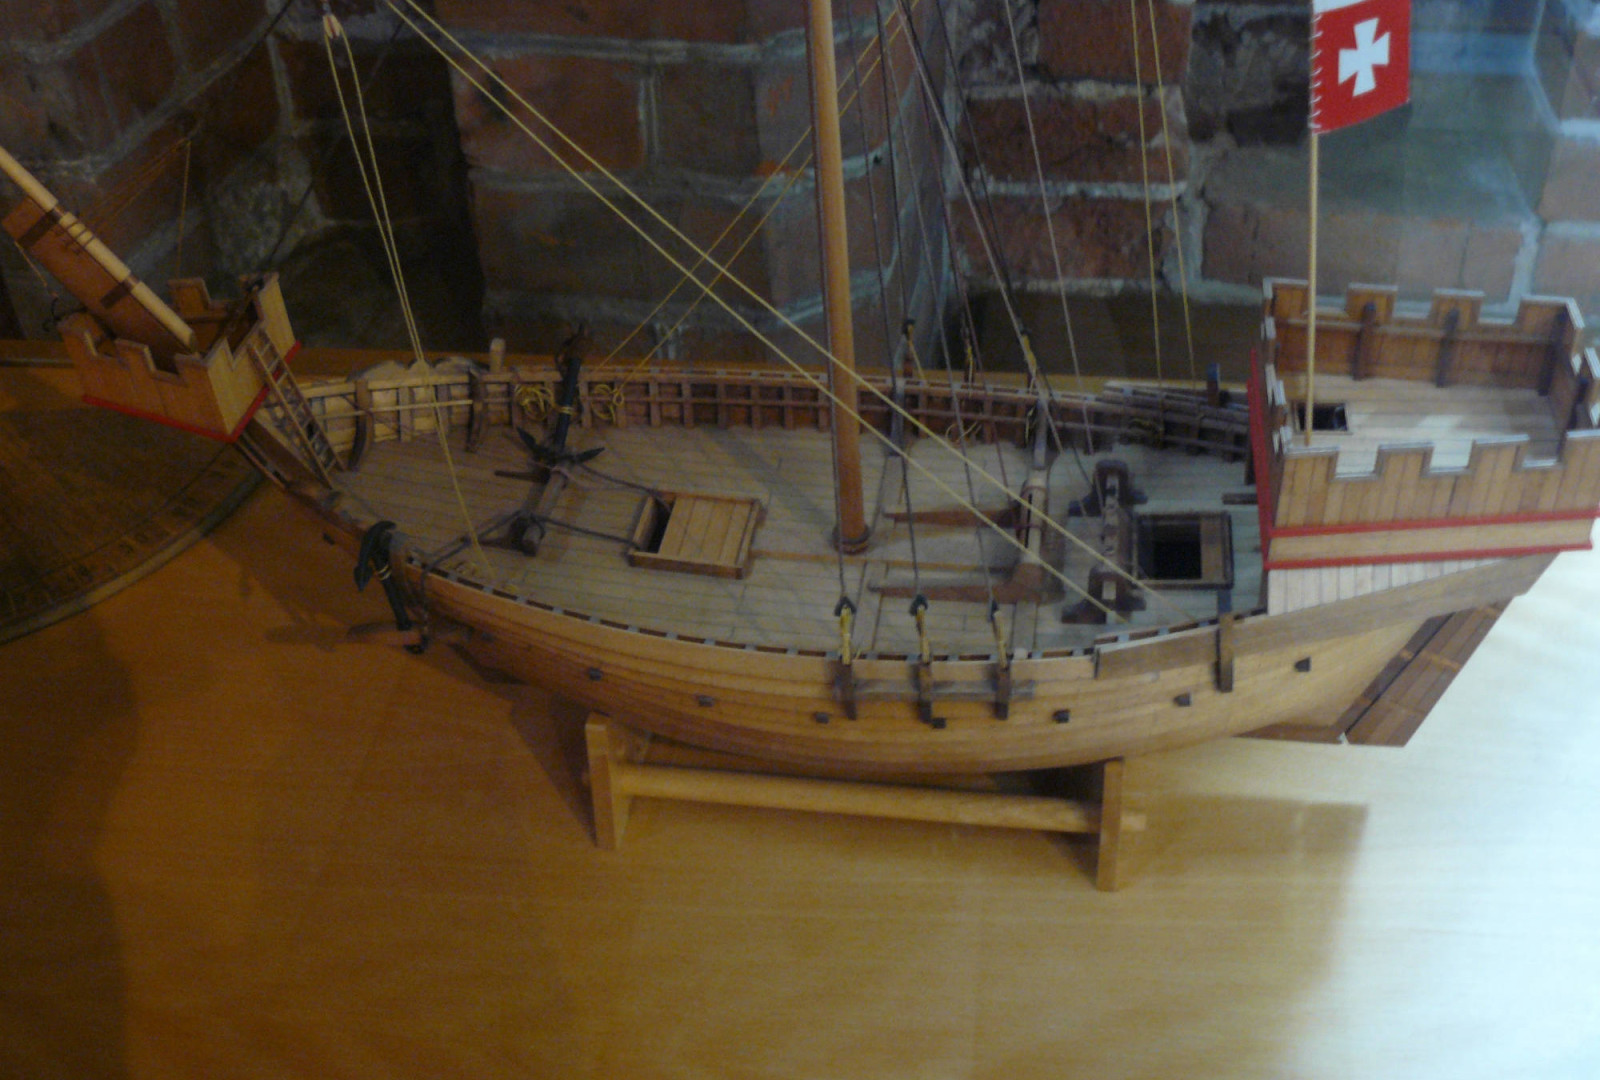 Modell Handelsschiff zur Hansezeit